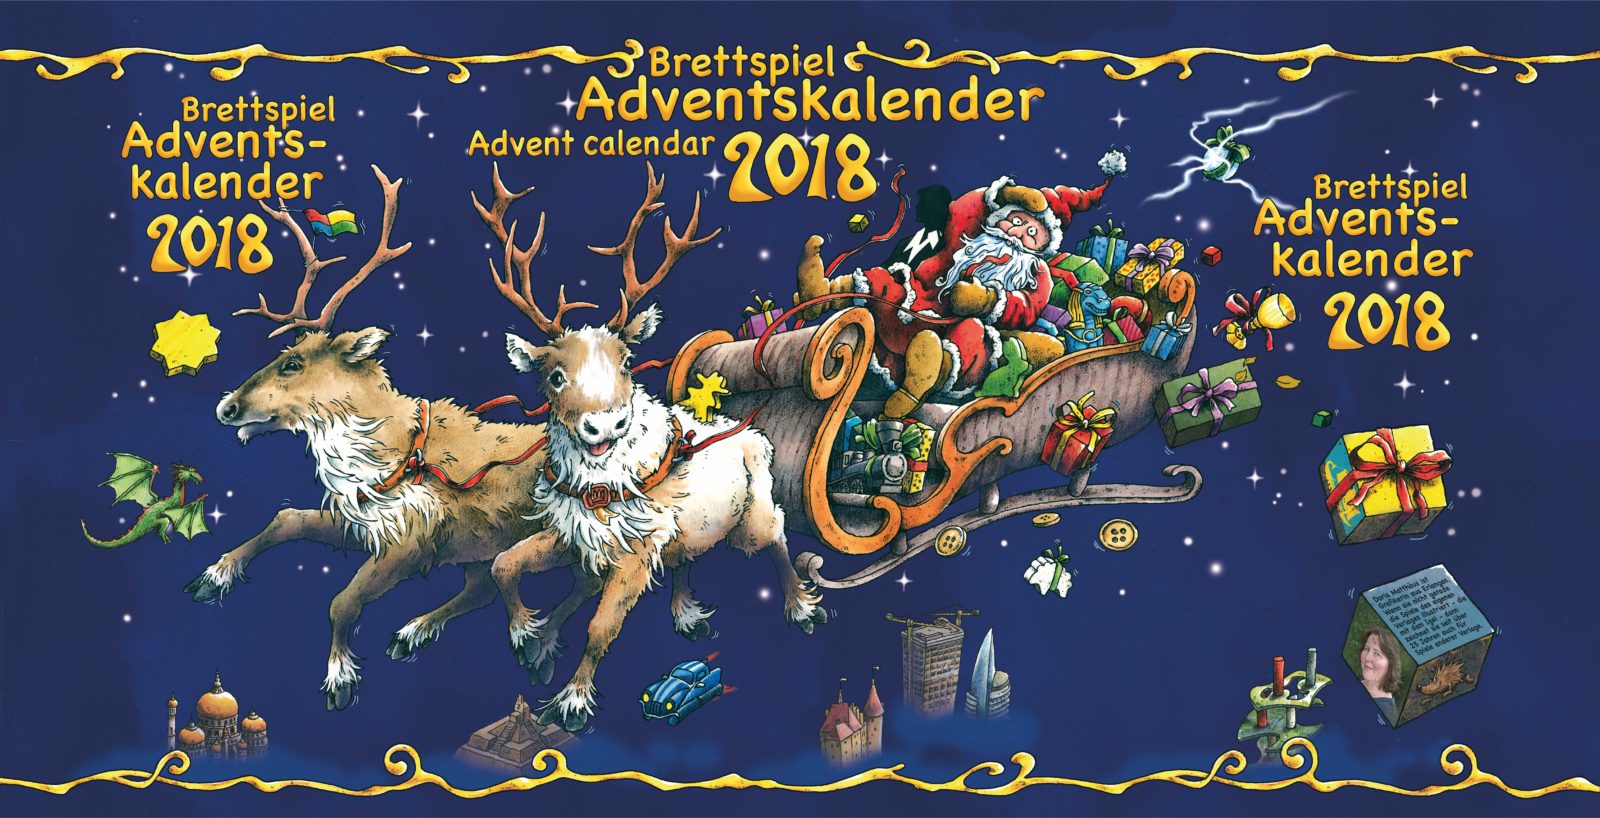 Der Brettspiel-Adventskalender 2018 mit Inhalt angekündigt 